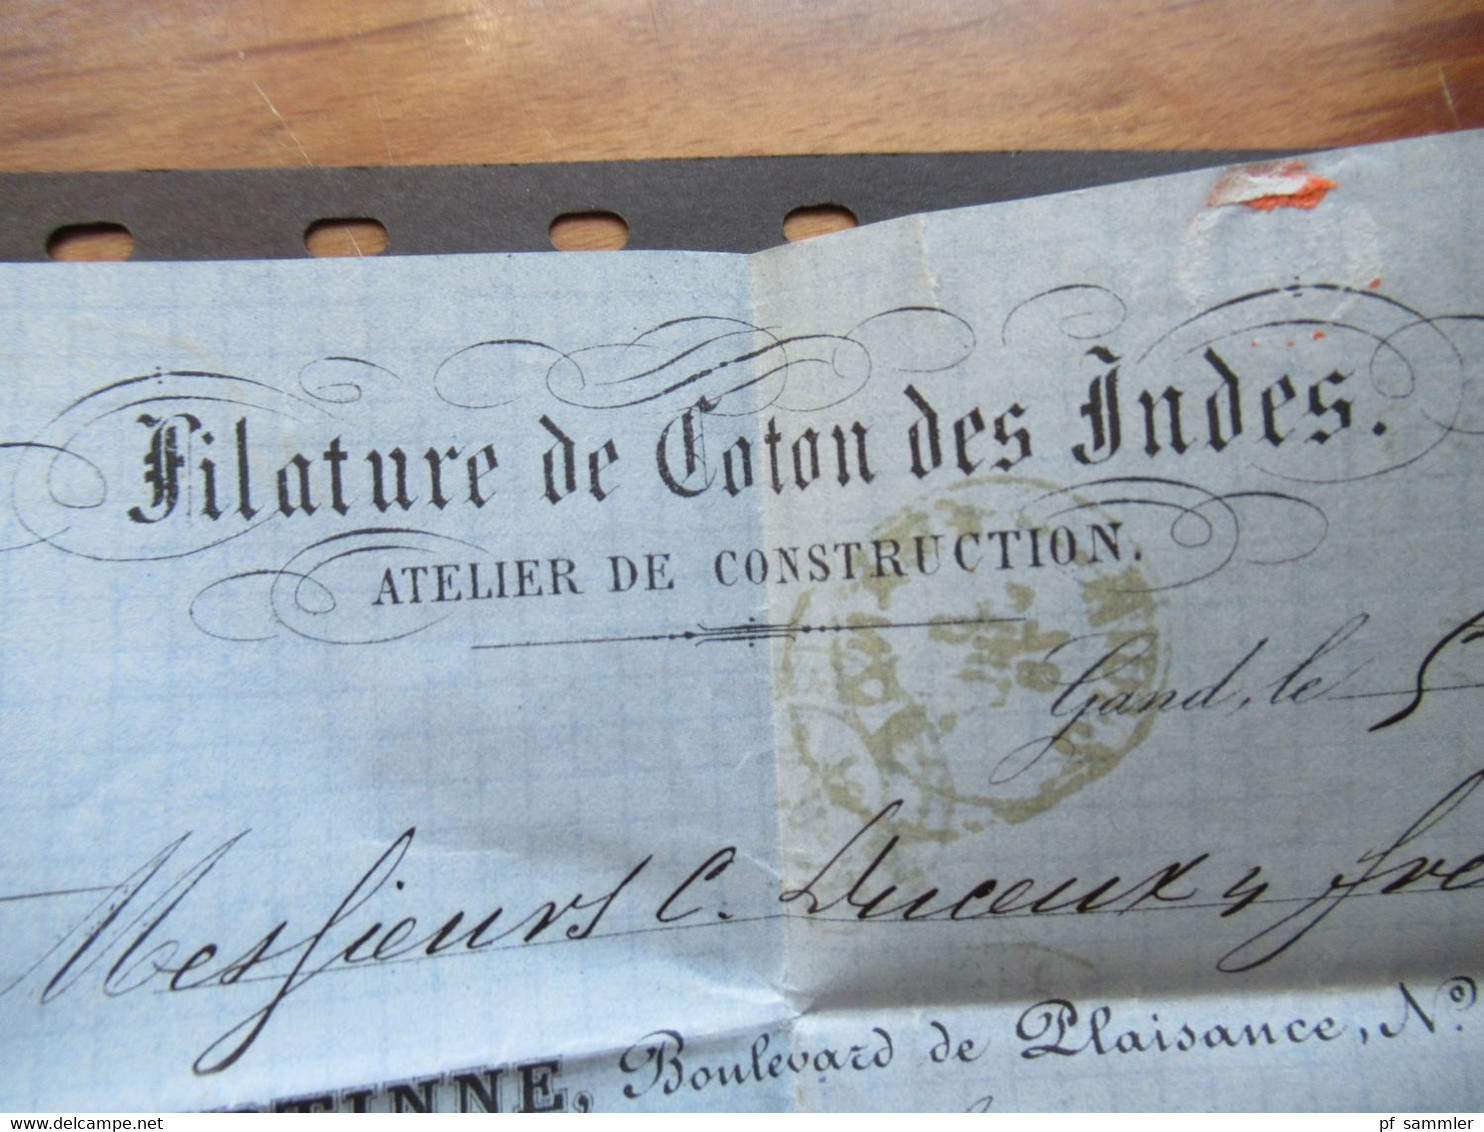 Belgien 1878 Nr.29 EF Auslandsbrief GAND - Saint Dié roter K2 Belg. A Erquelines / France Midi Faltbrief mit Inhalt